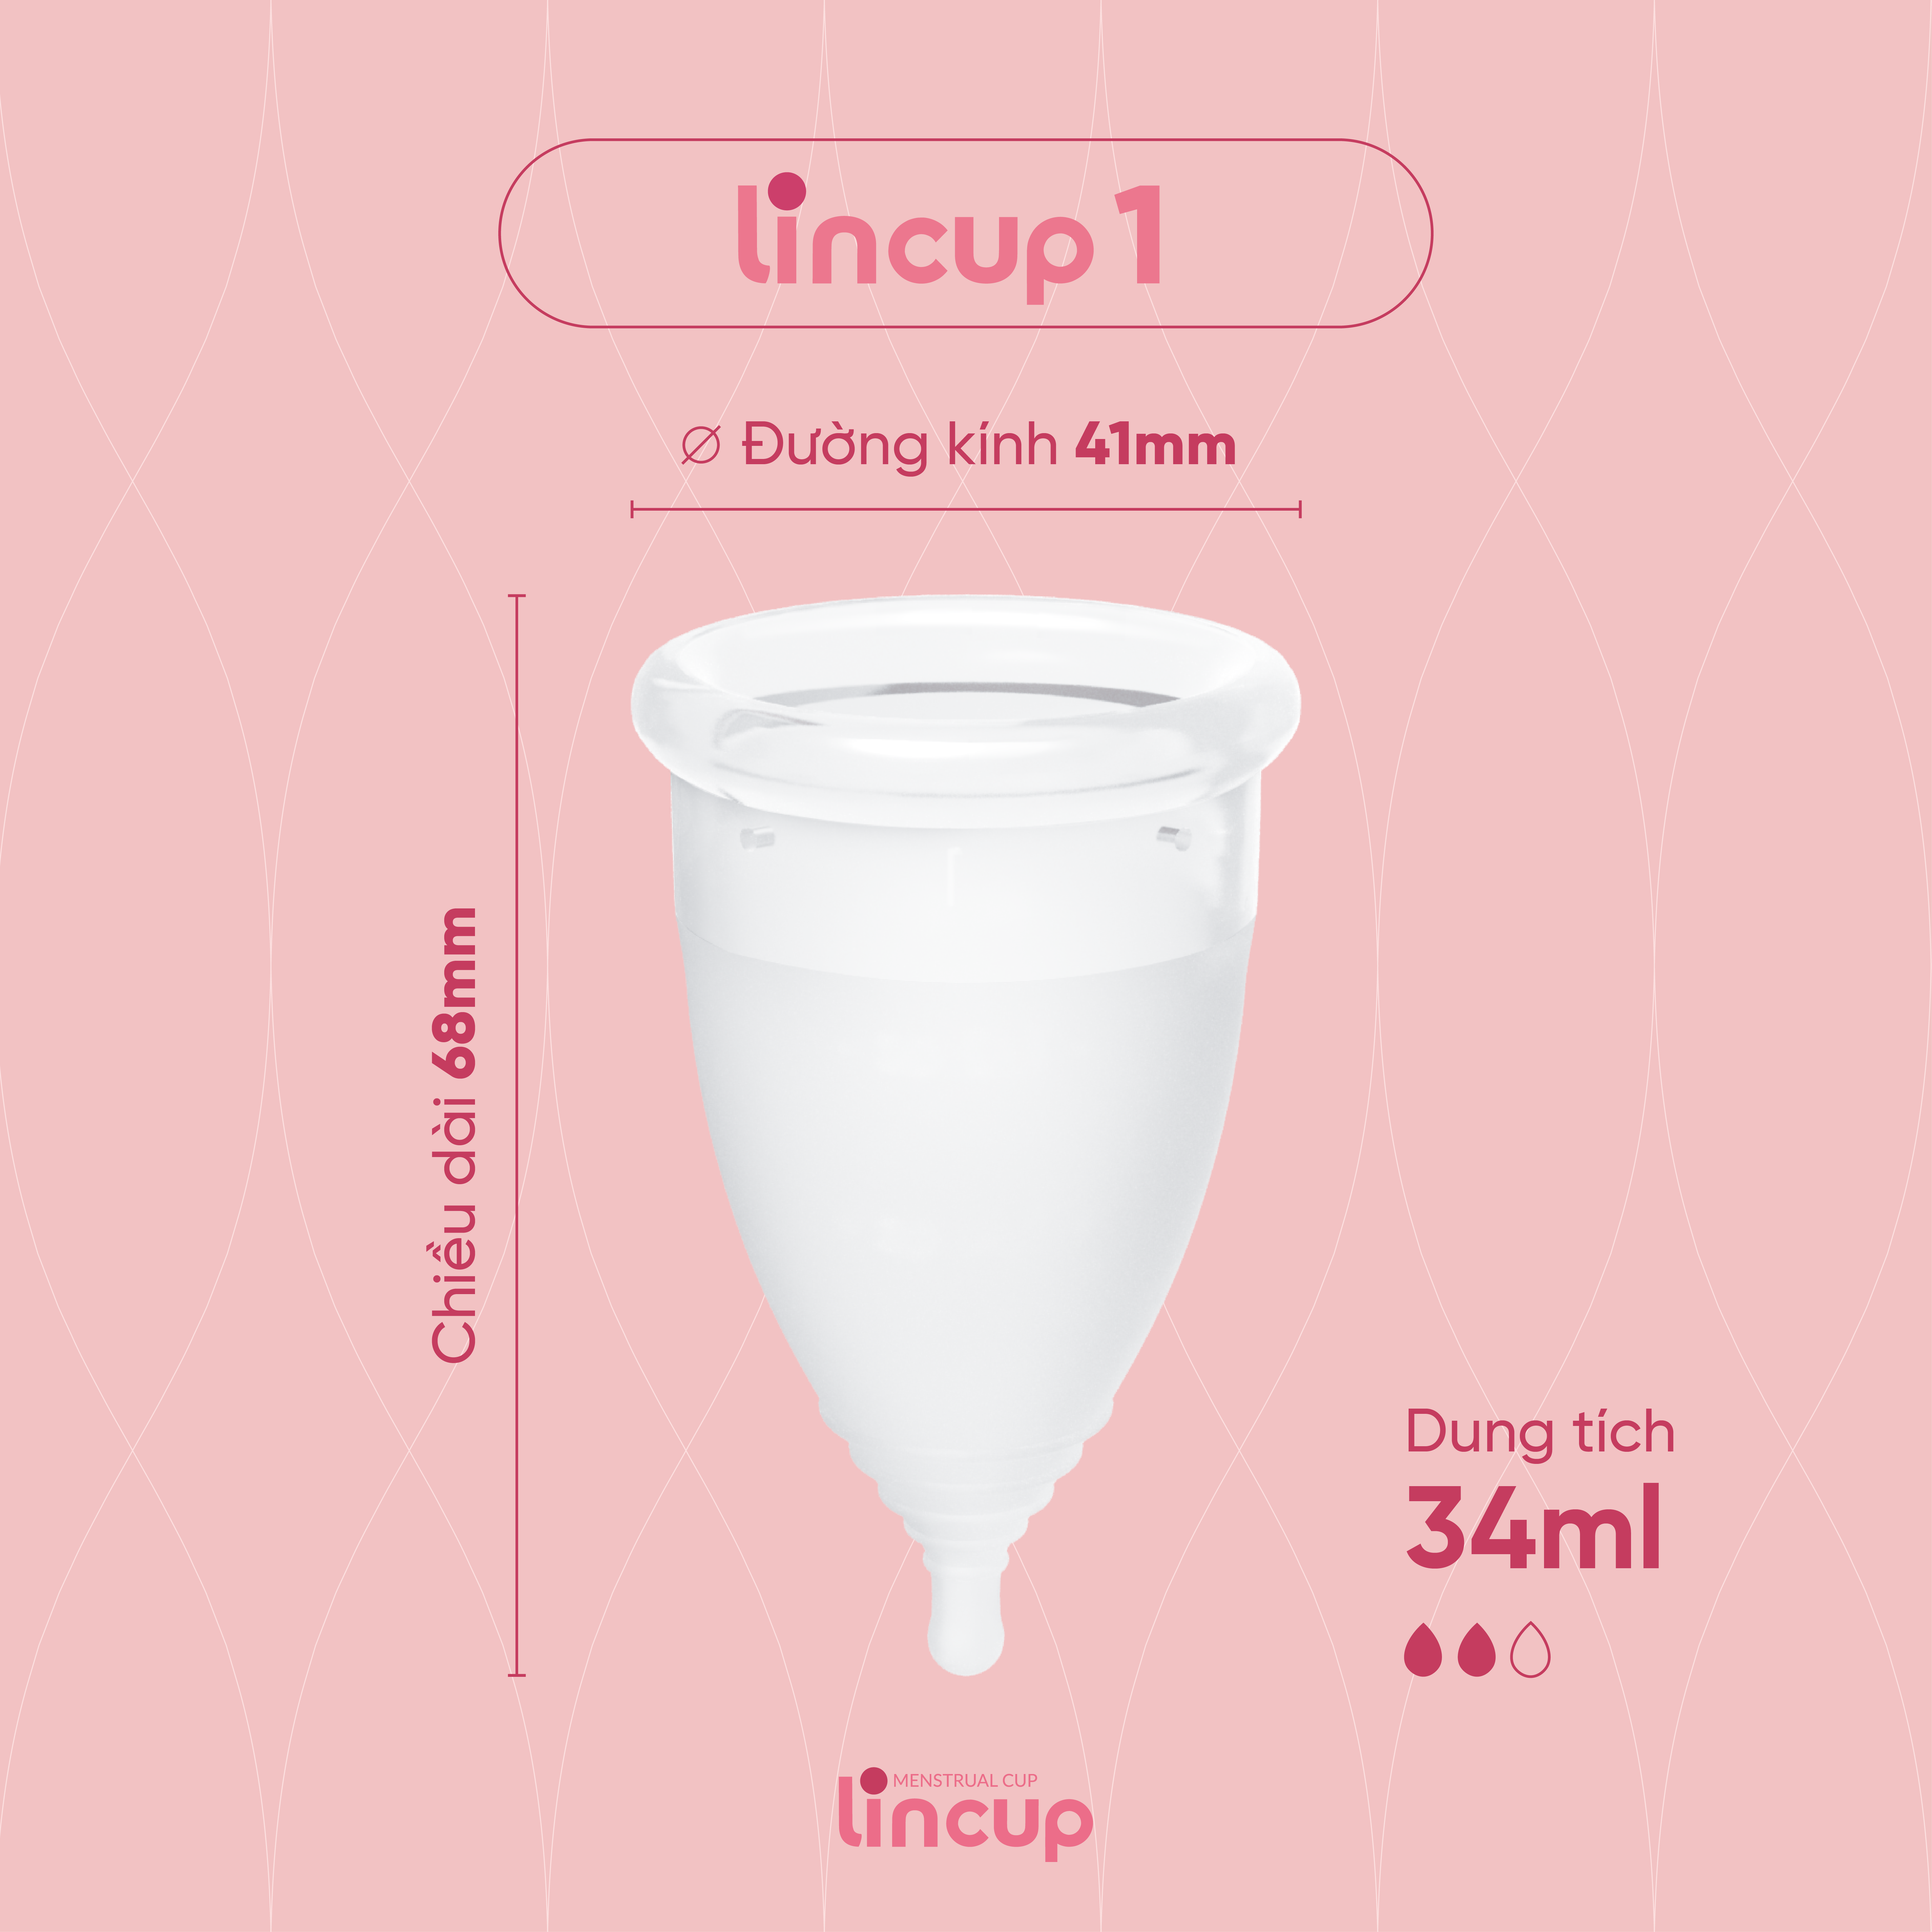 Hình ảnh Combo cốc nguyệt san Lincup size 25ml/34ml/40ml và bộ 4 sản phẩm thiết yếu hỗ trợ dùng cốc nguyệt san